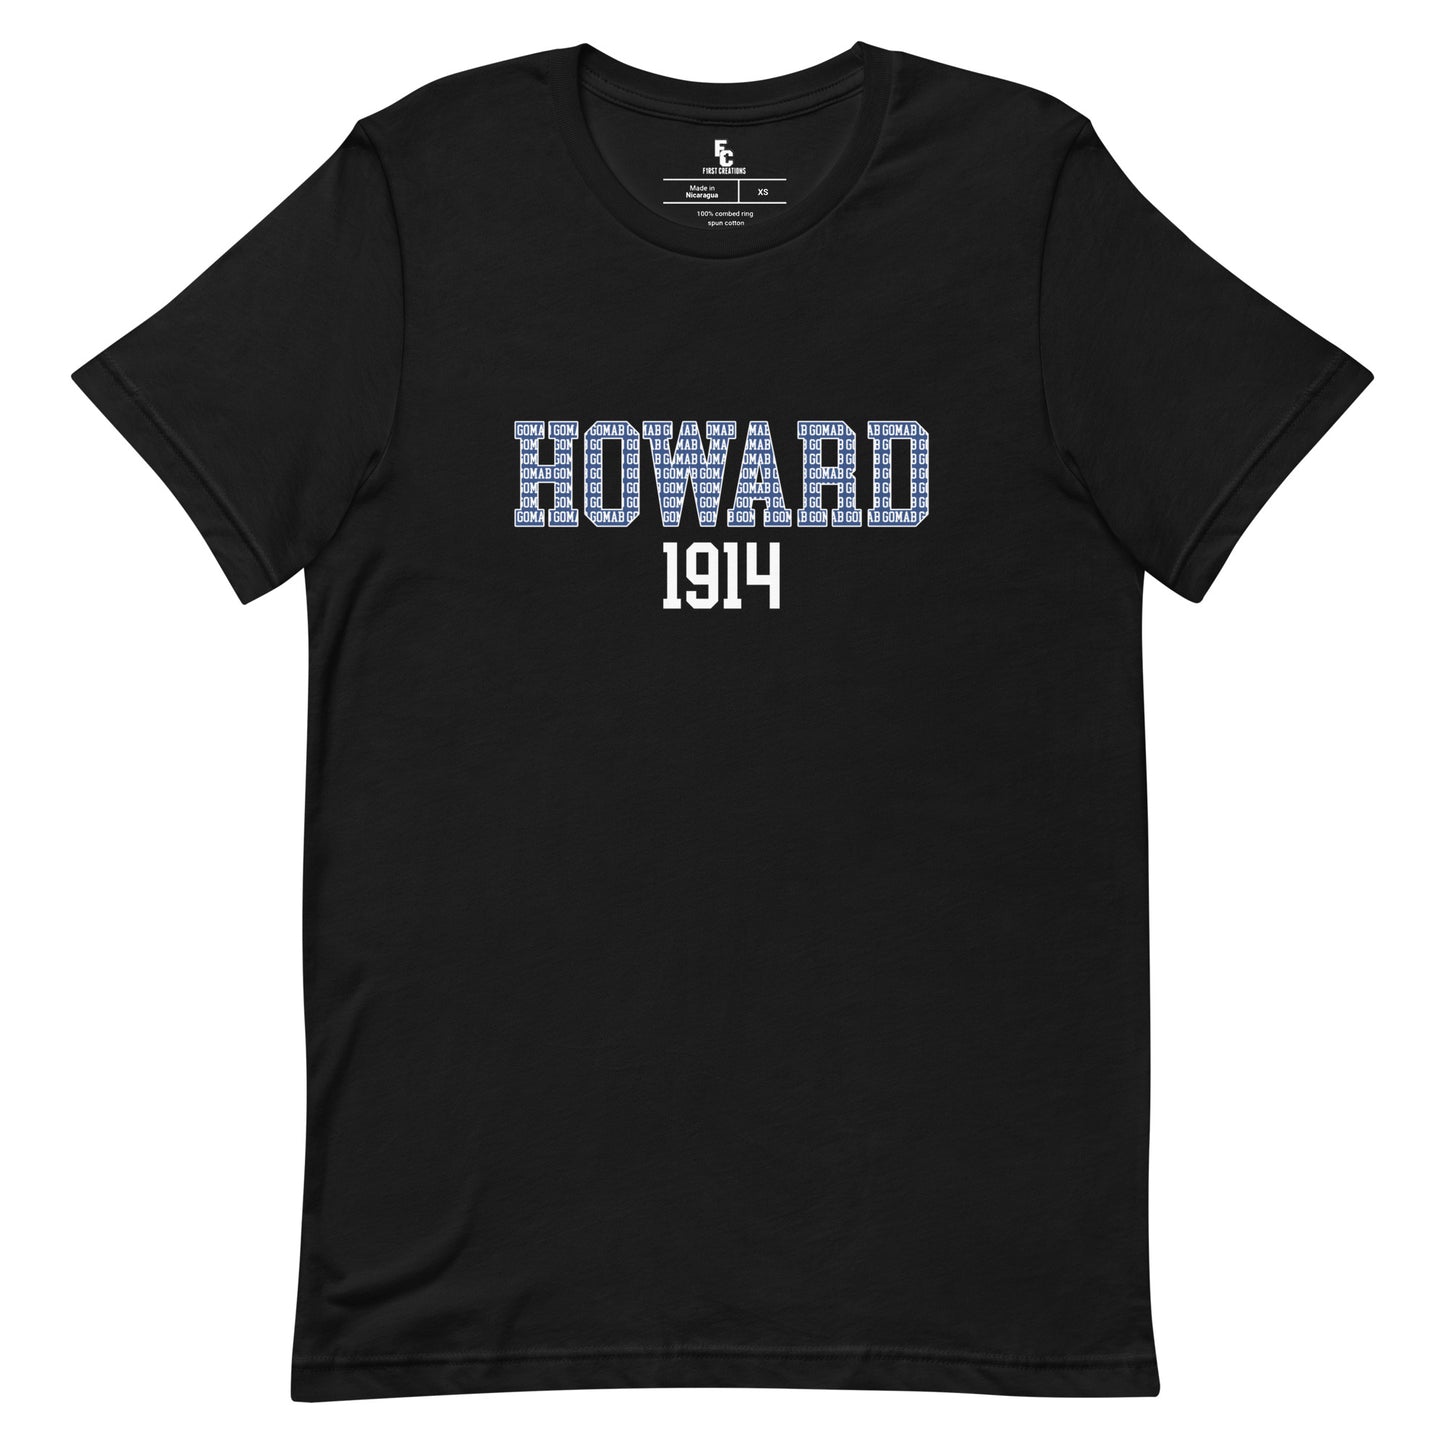 Howard 1914